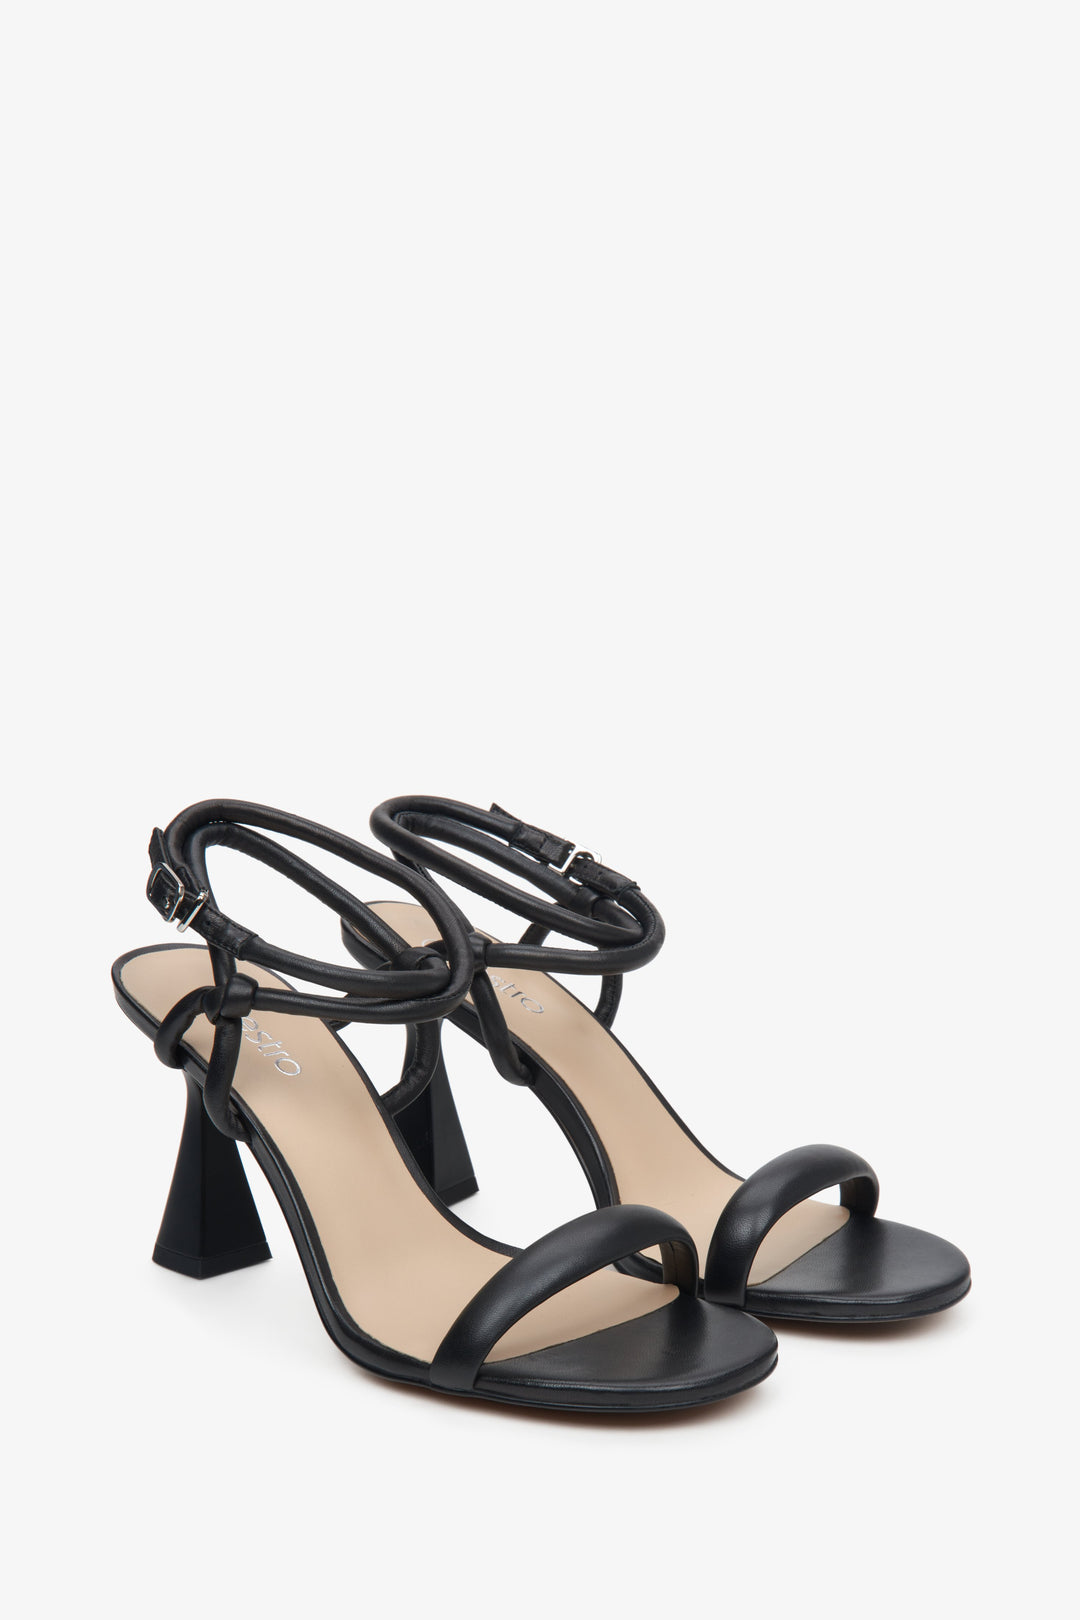 Czarne skórzane sandały damskie na szpilce Estro z cienkich pasków - zbliżenie na linię boczną i linię palców.